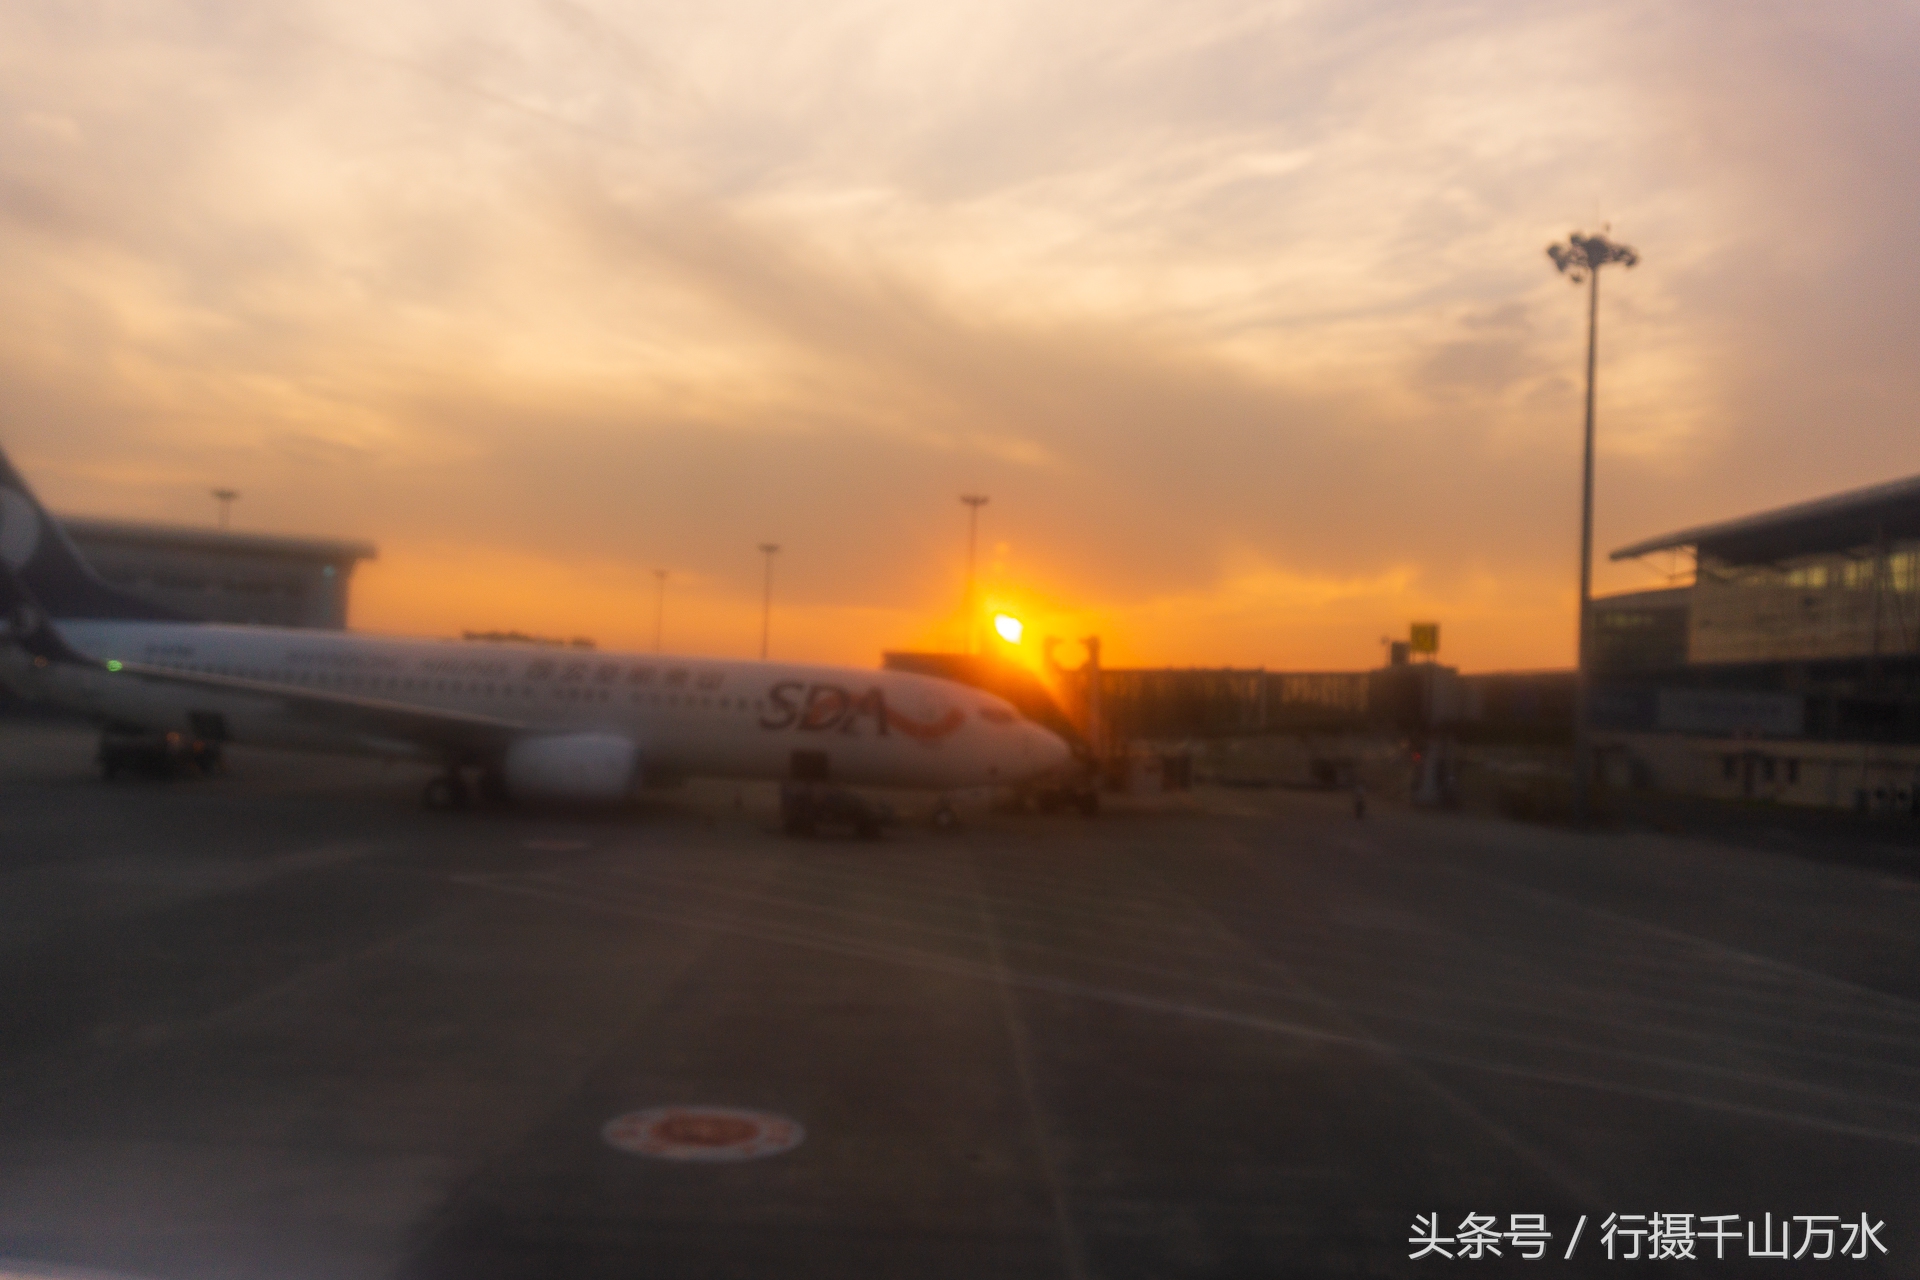 实拍济南机场等待起飞的大飞机,停机坪的飞机稀稀拉拉